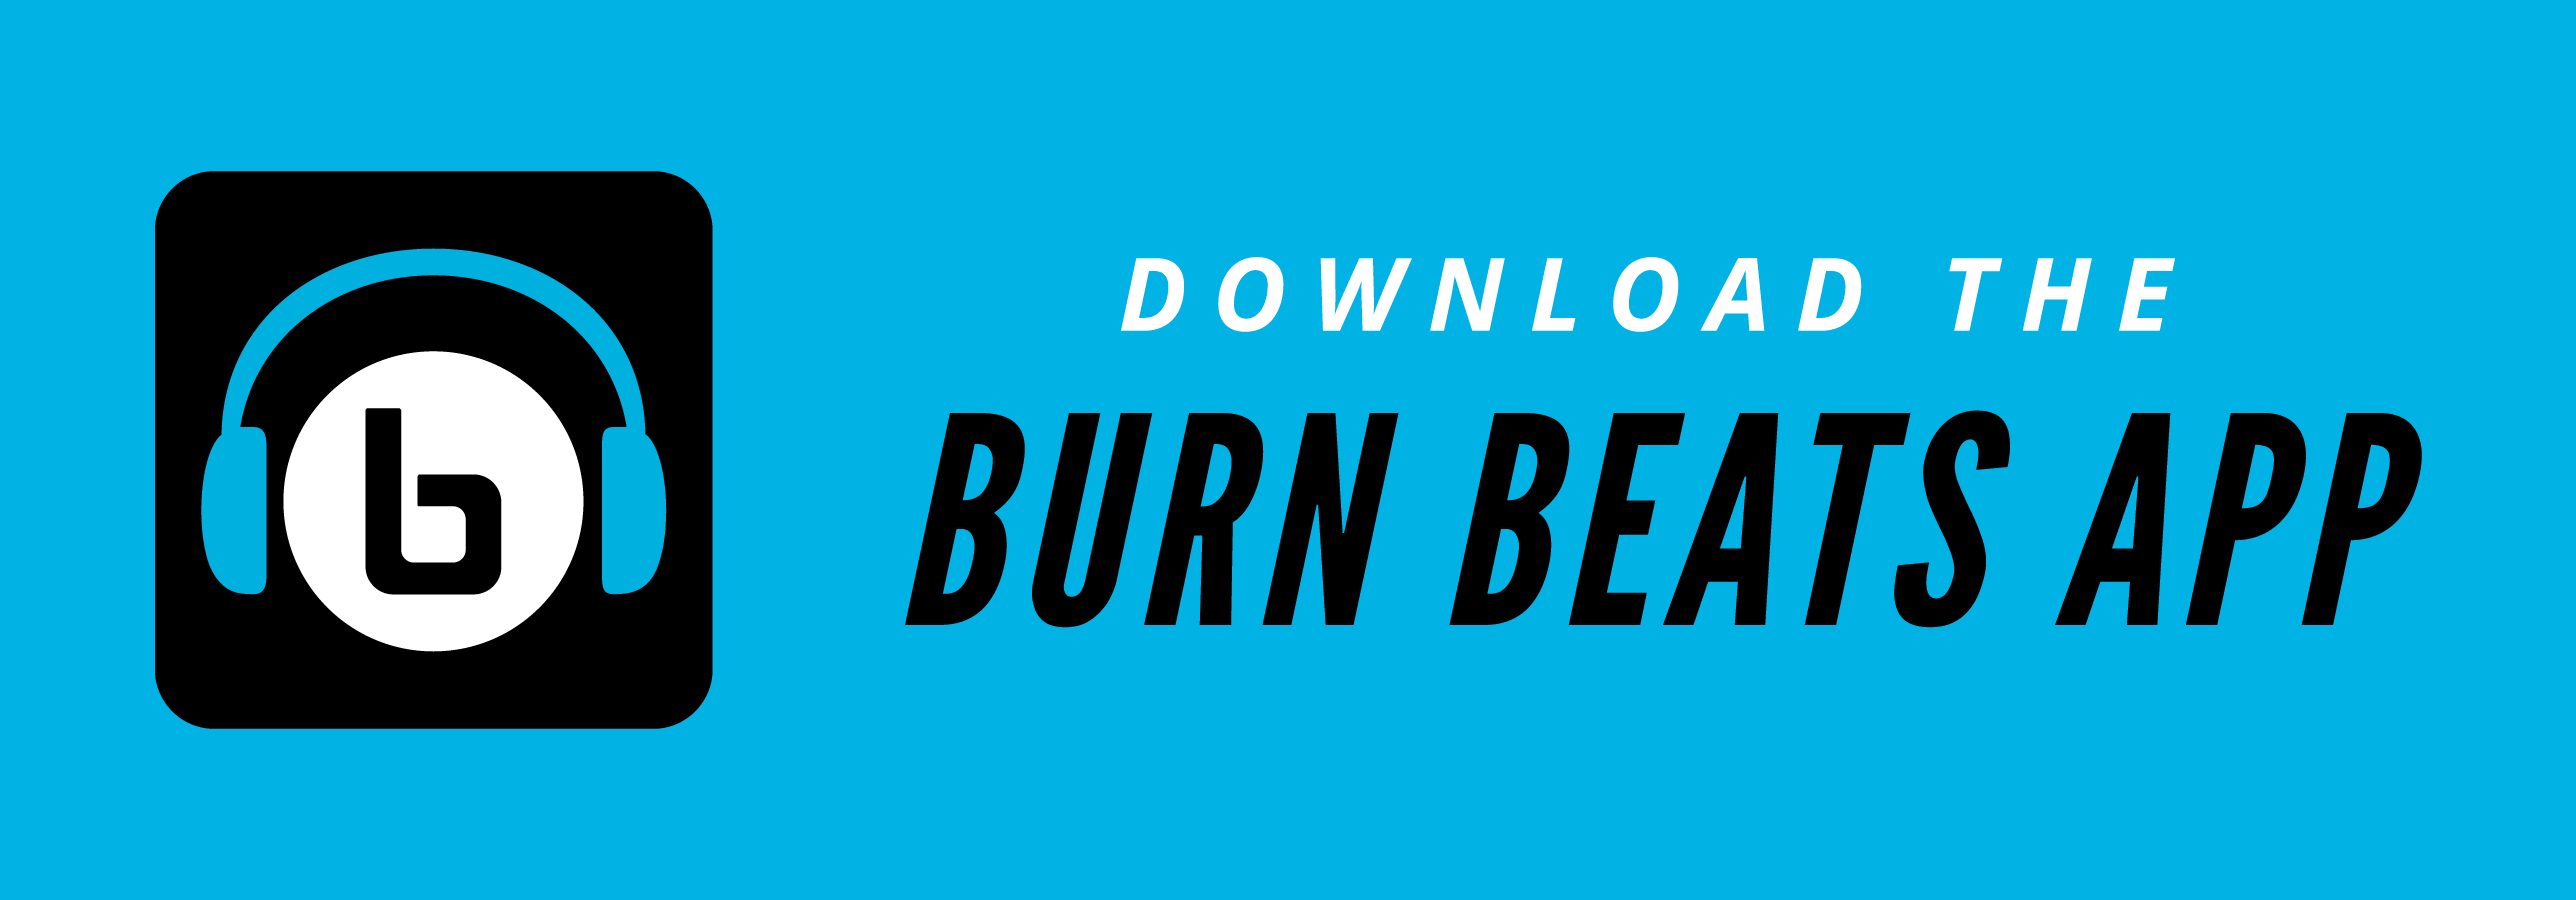 Burn Beats